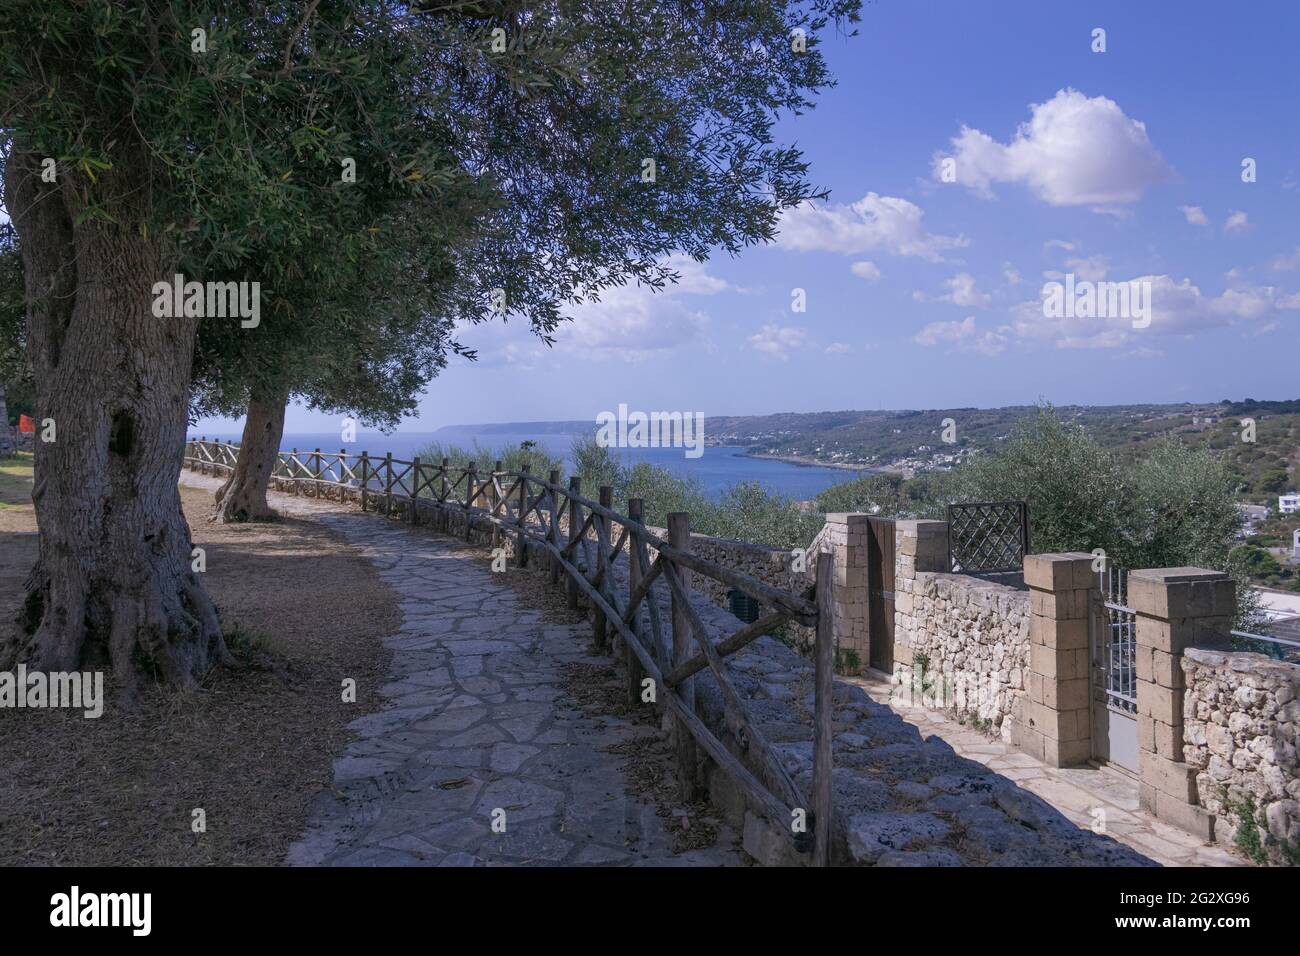 Costa Apulia: Paesaggio urbano di Castro (Italia). Il villaggio è arroccato su una scogliera, che si affaccia sul mare Adriatico. Foto Stock